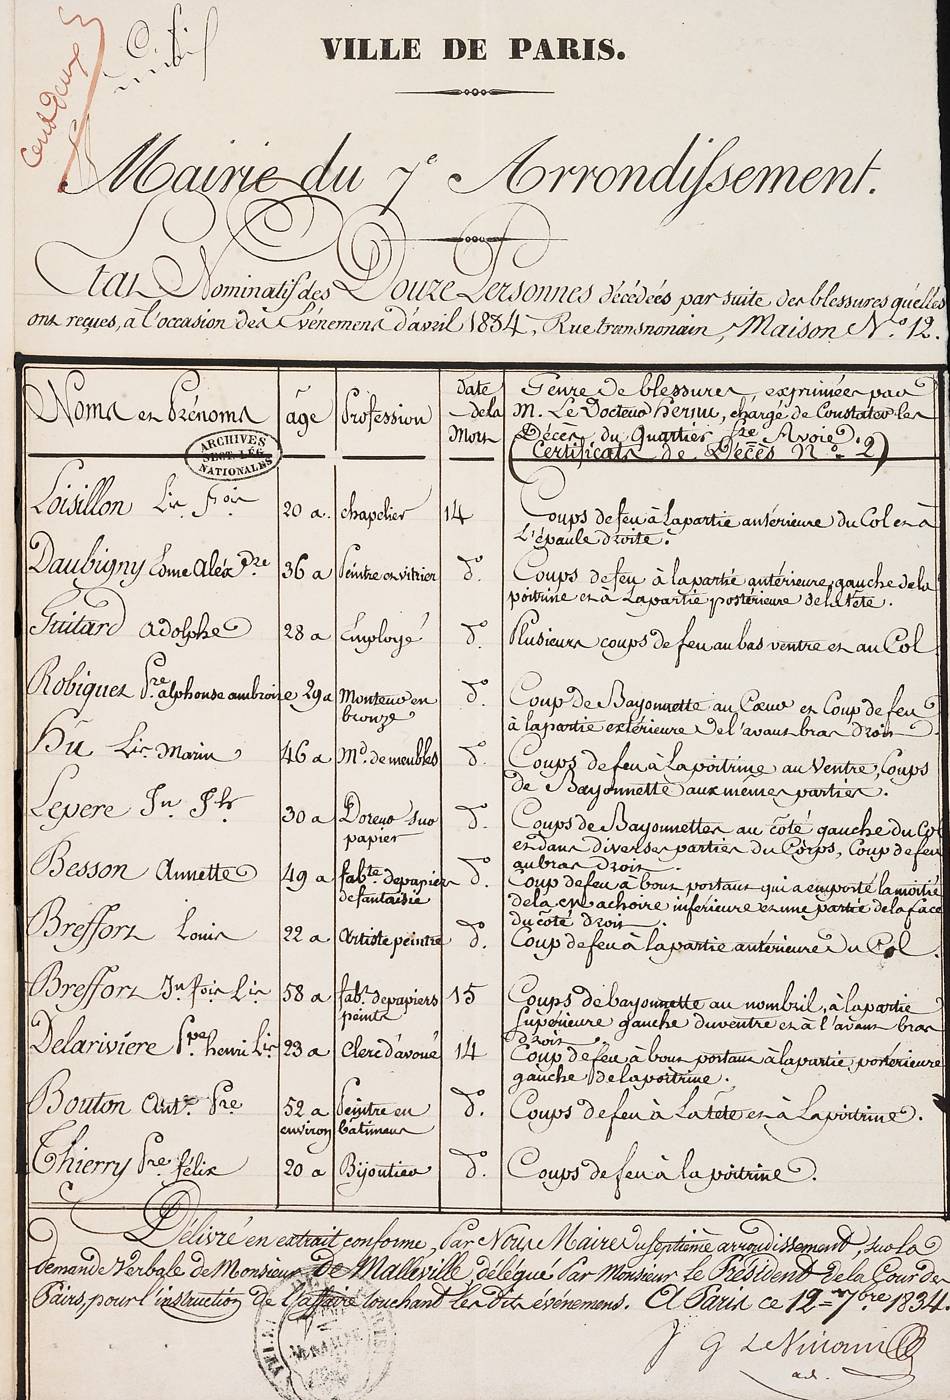 Etat nominatif des douze personnes décédées [... des événements d'avril 1834, rue Transnonain.